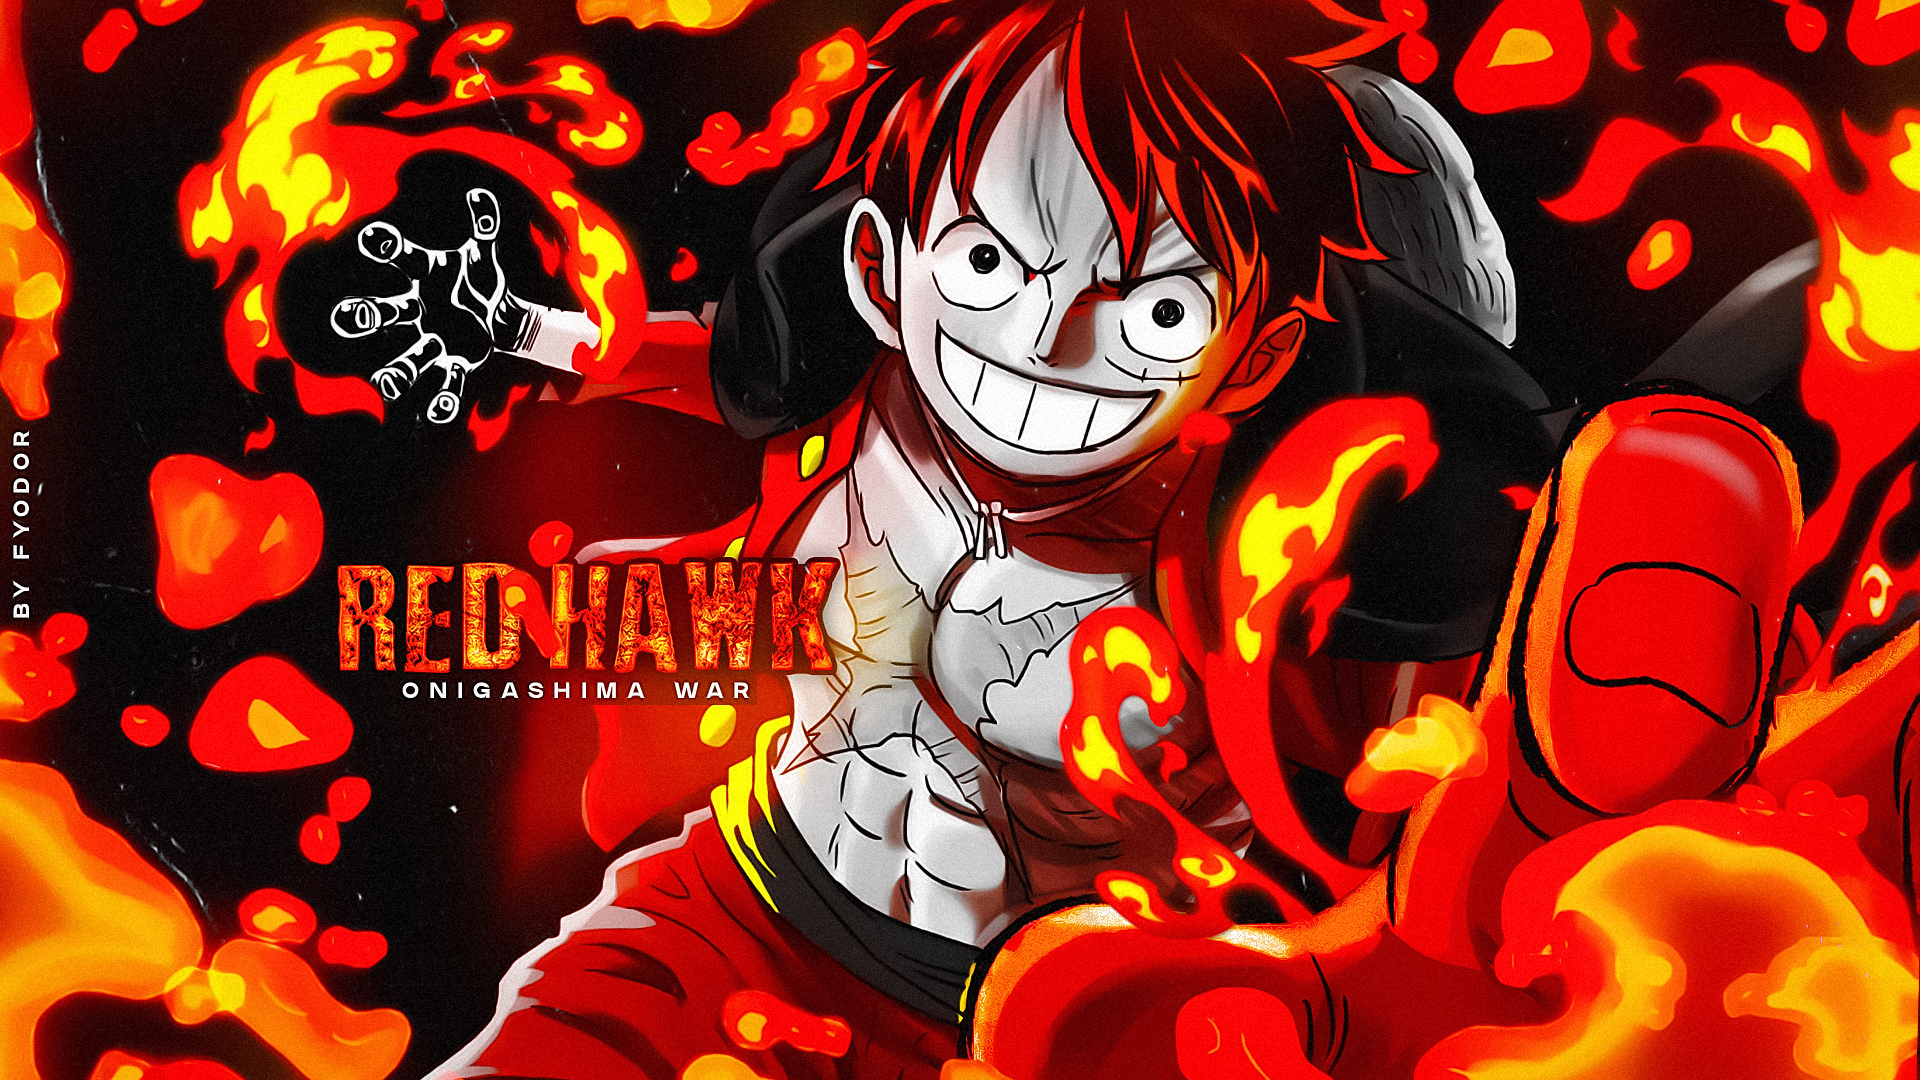 Luffy Red Hawk (4k) (One Piece) : r/wallpaperengine